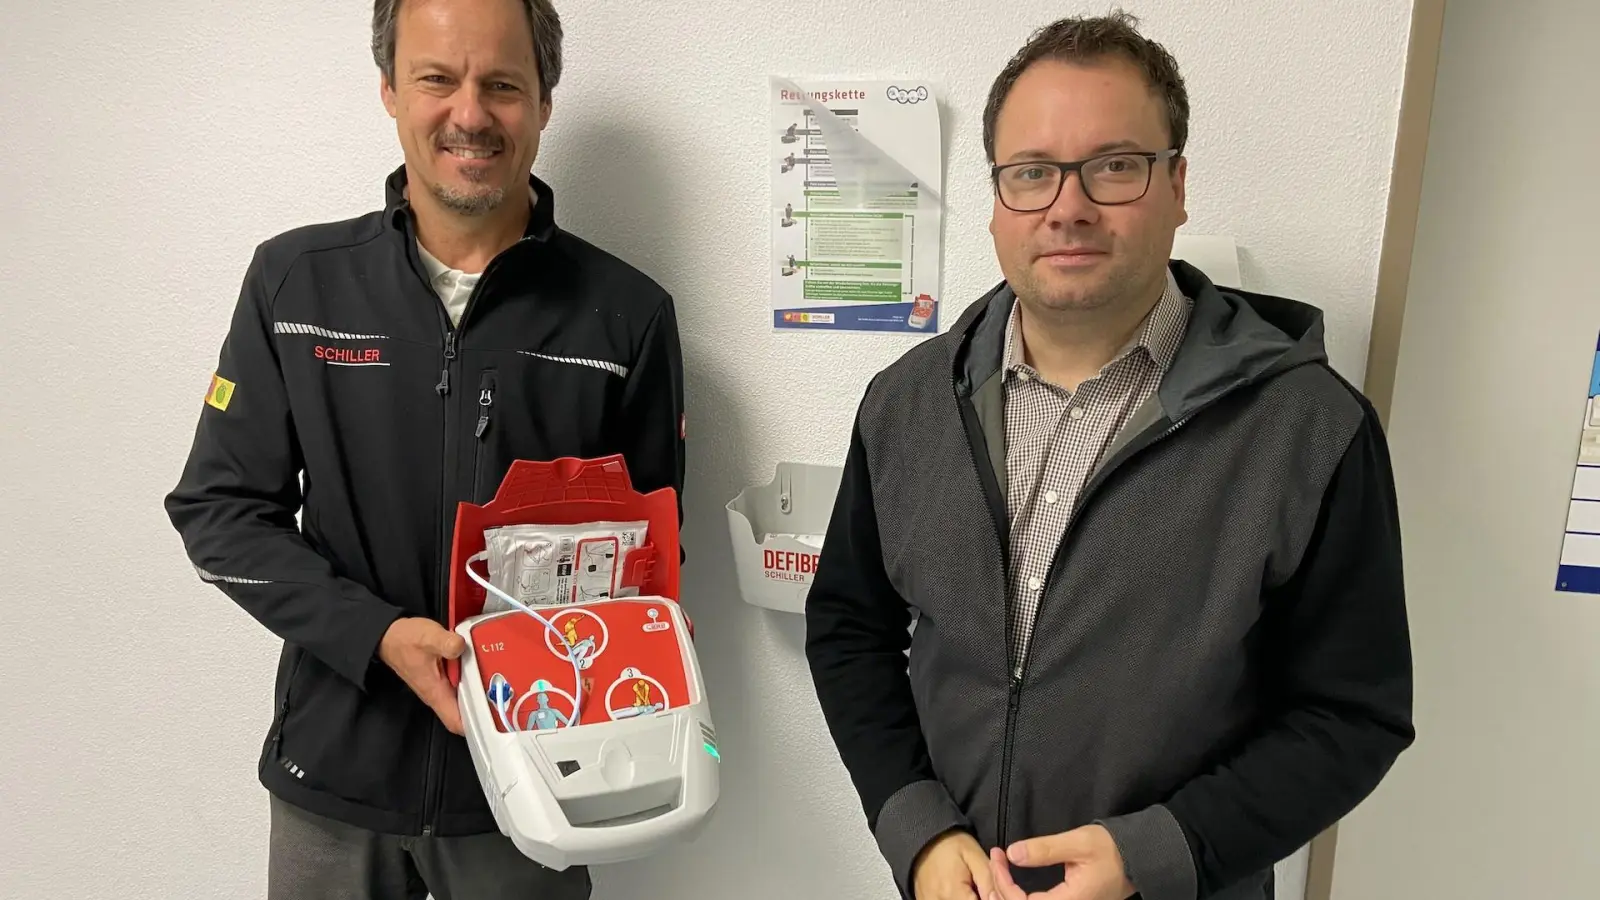 Christian Köhler mit dem Defibrillator “Fred” und Bürgermeister Tobias Meier in der Mehrzweckhalle Taucha. (Foto: taucha-kompakt.de)